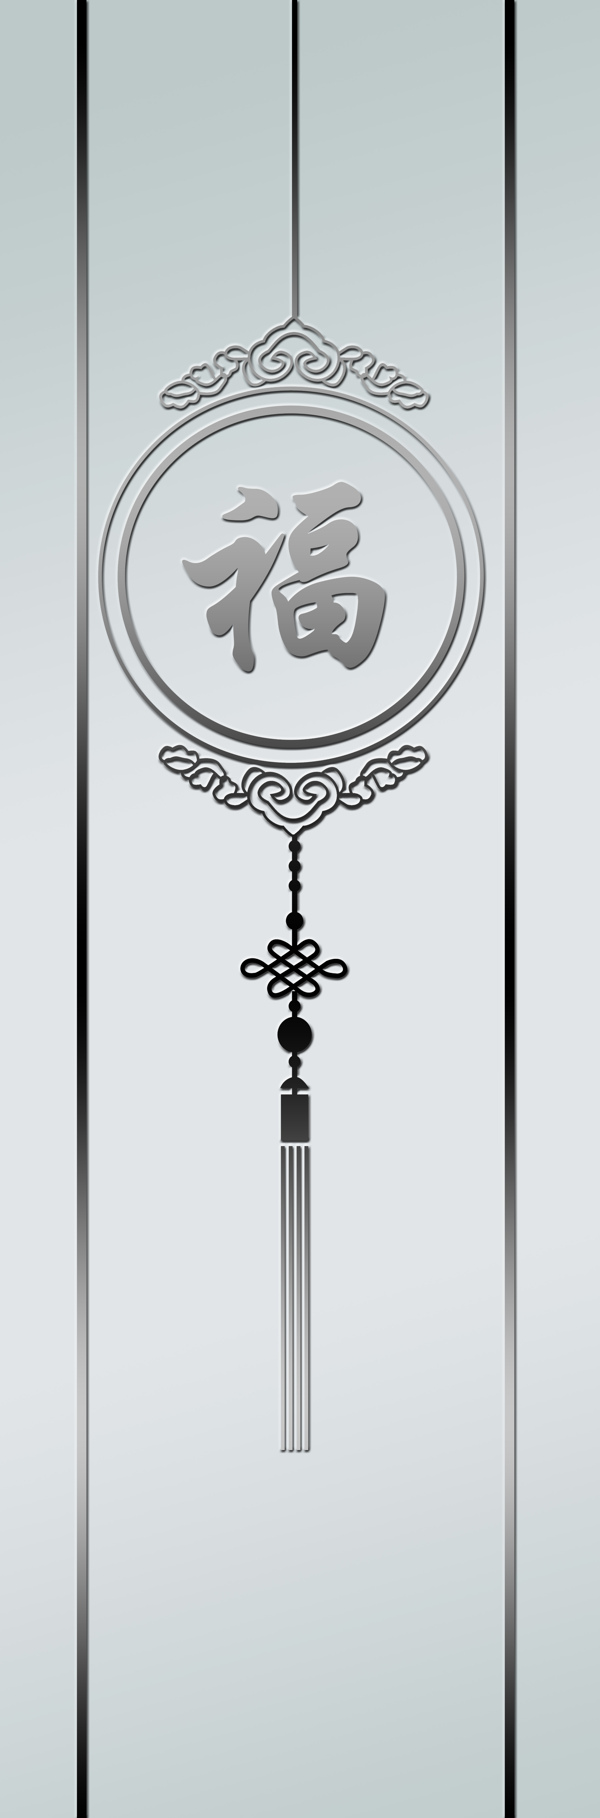 玄关中国结福字形象墙图片